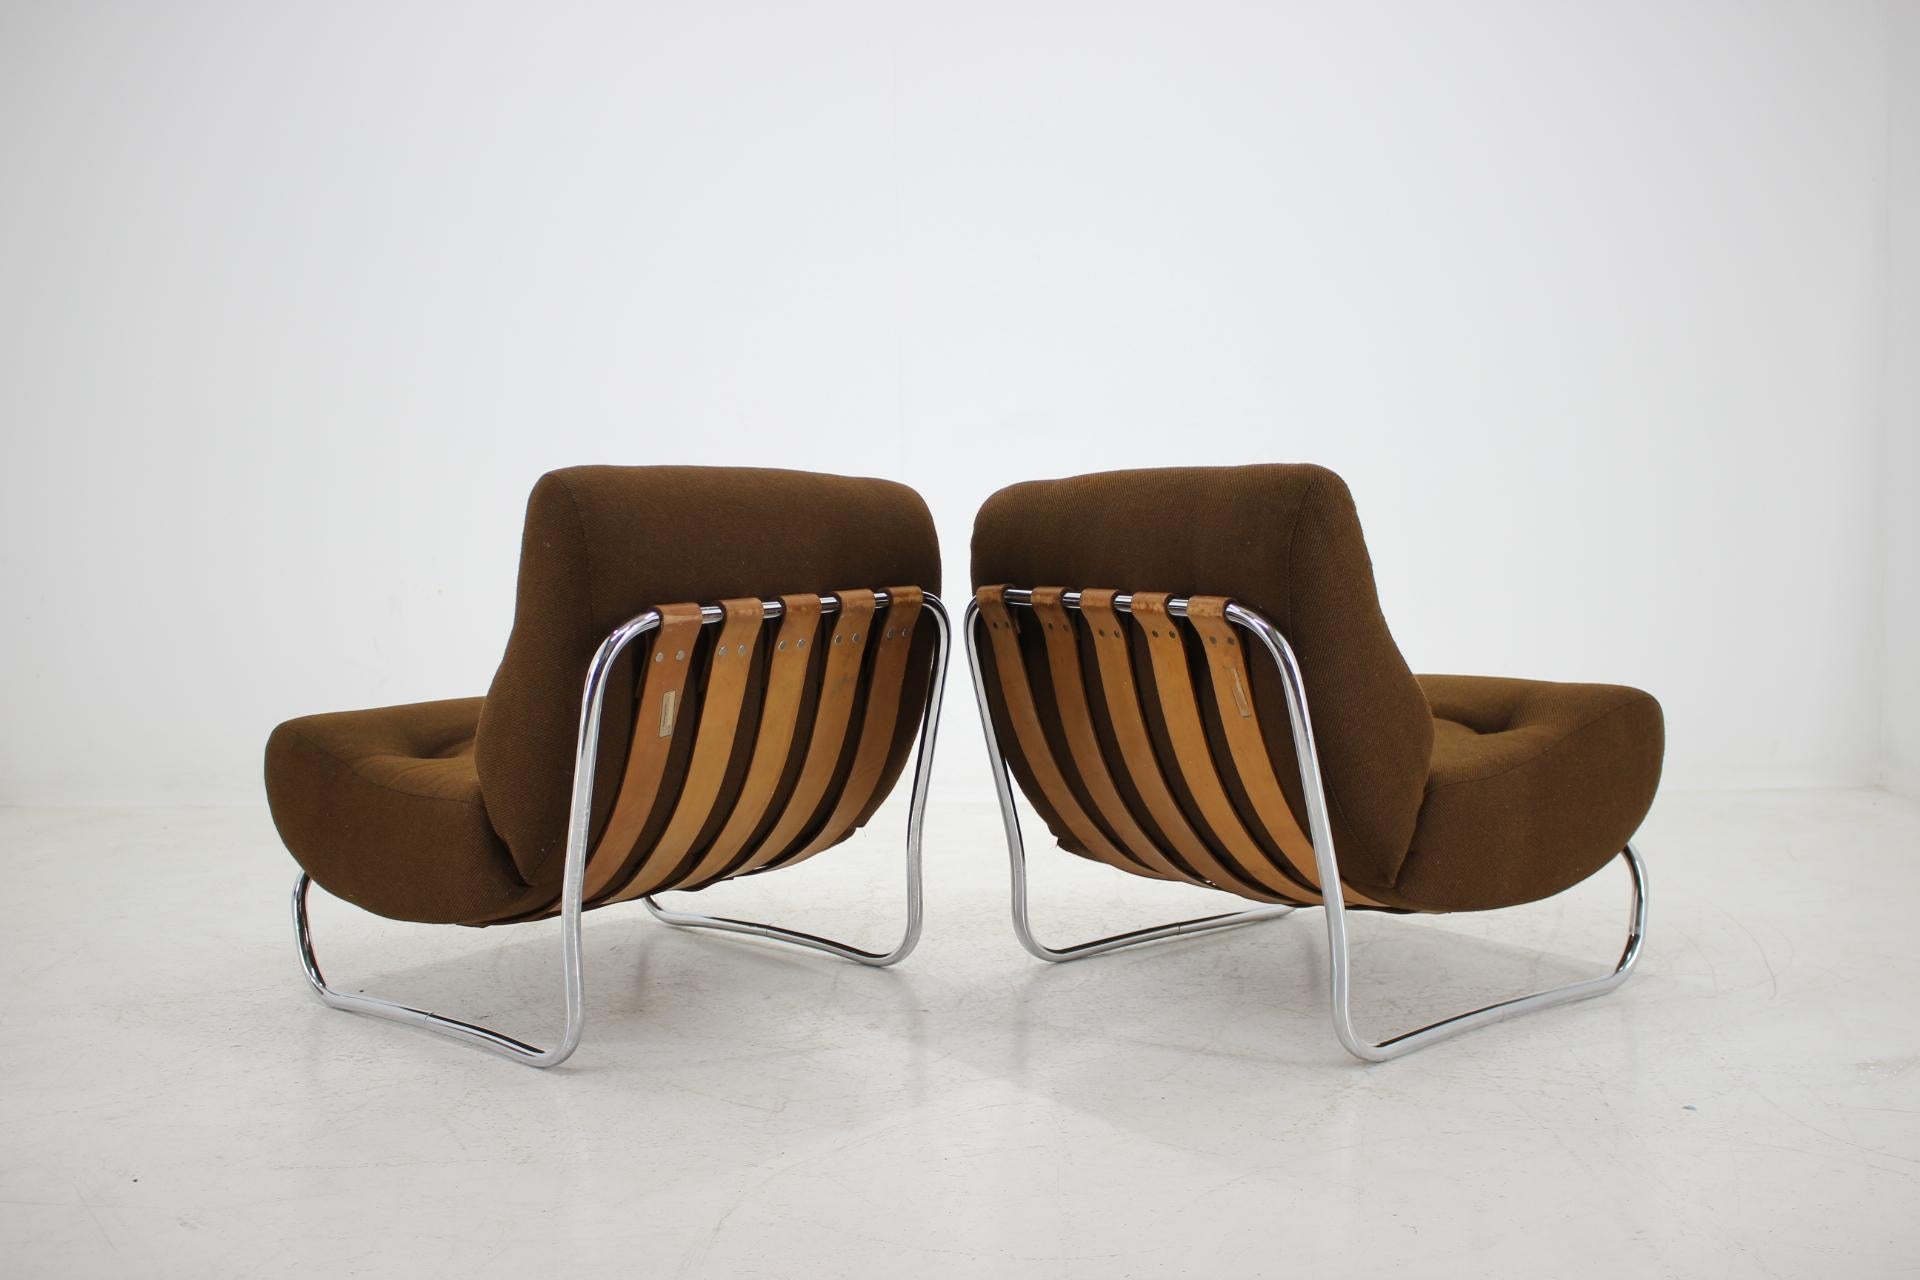 Steel Pair of German Lounge Chairs, 1970